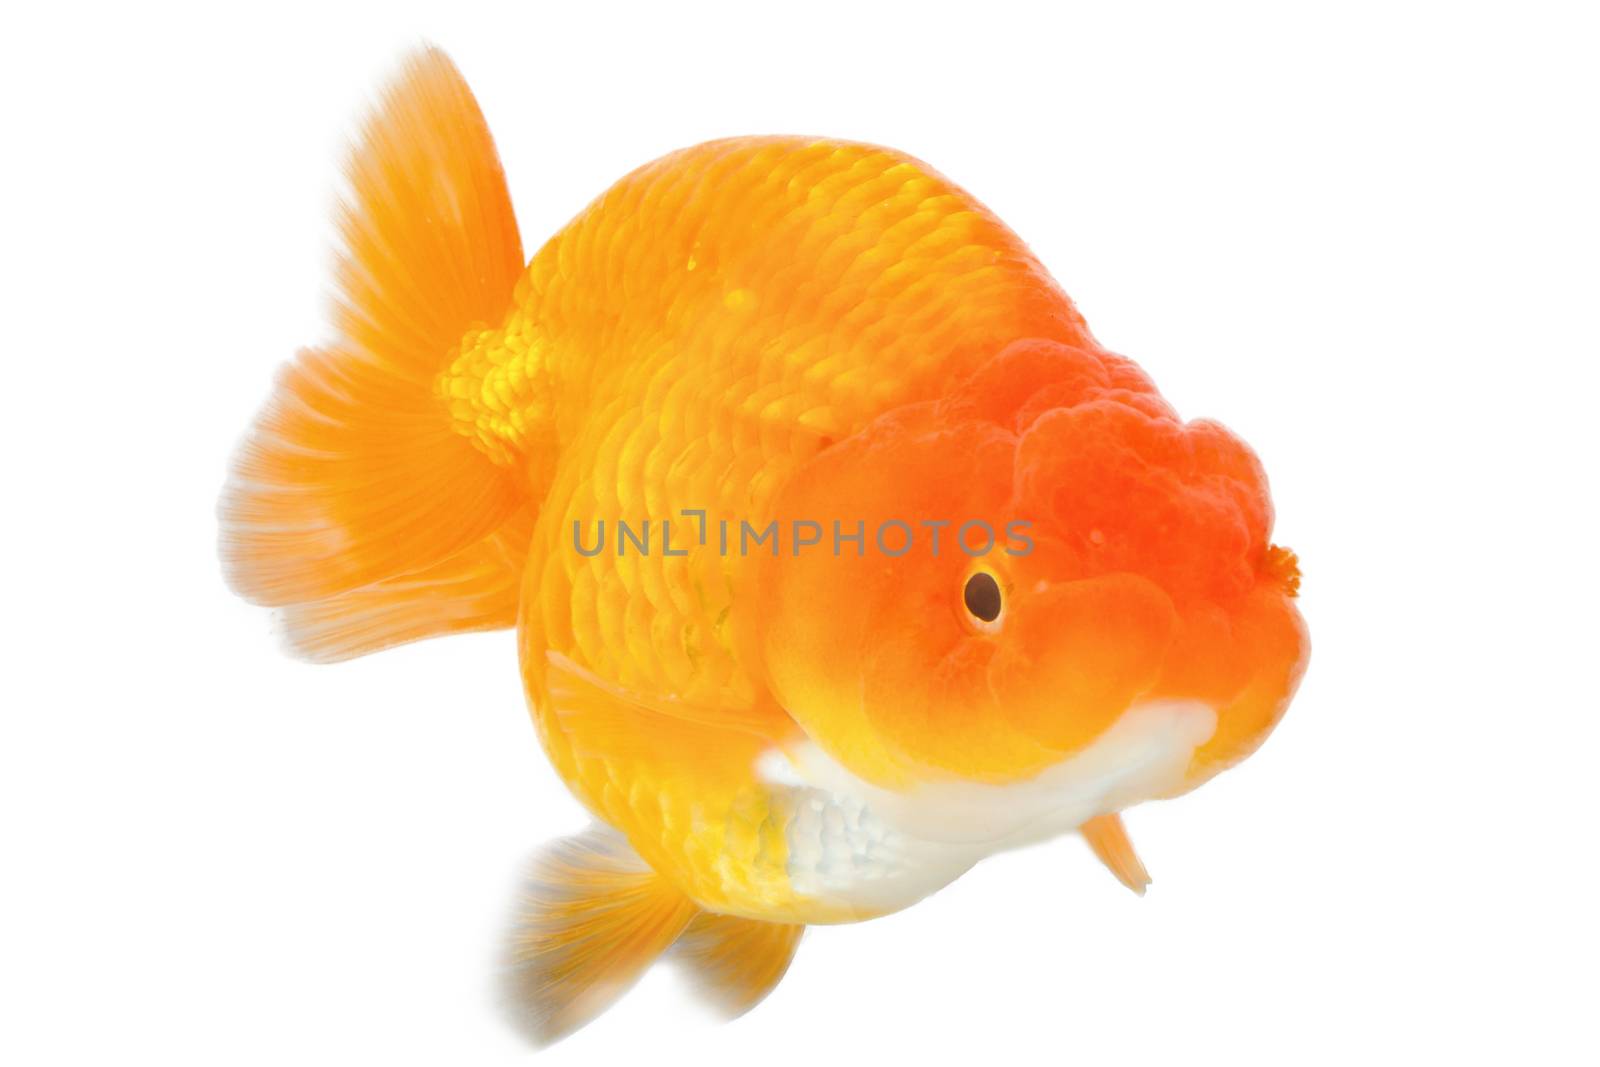 goldfish on white background